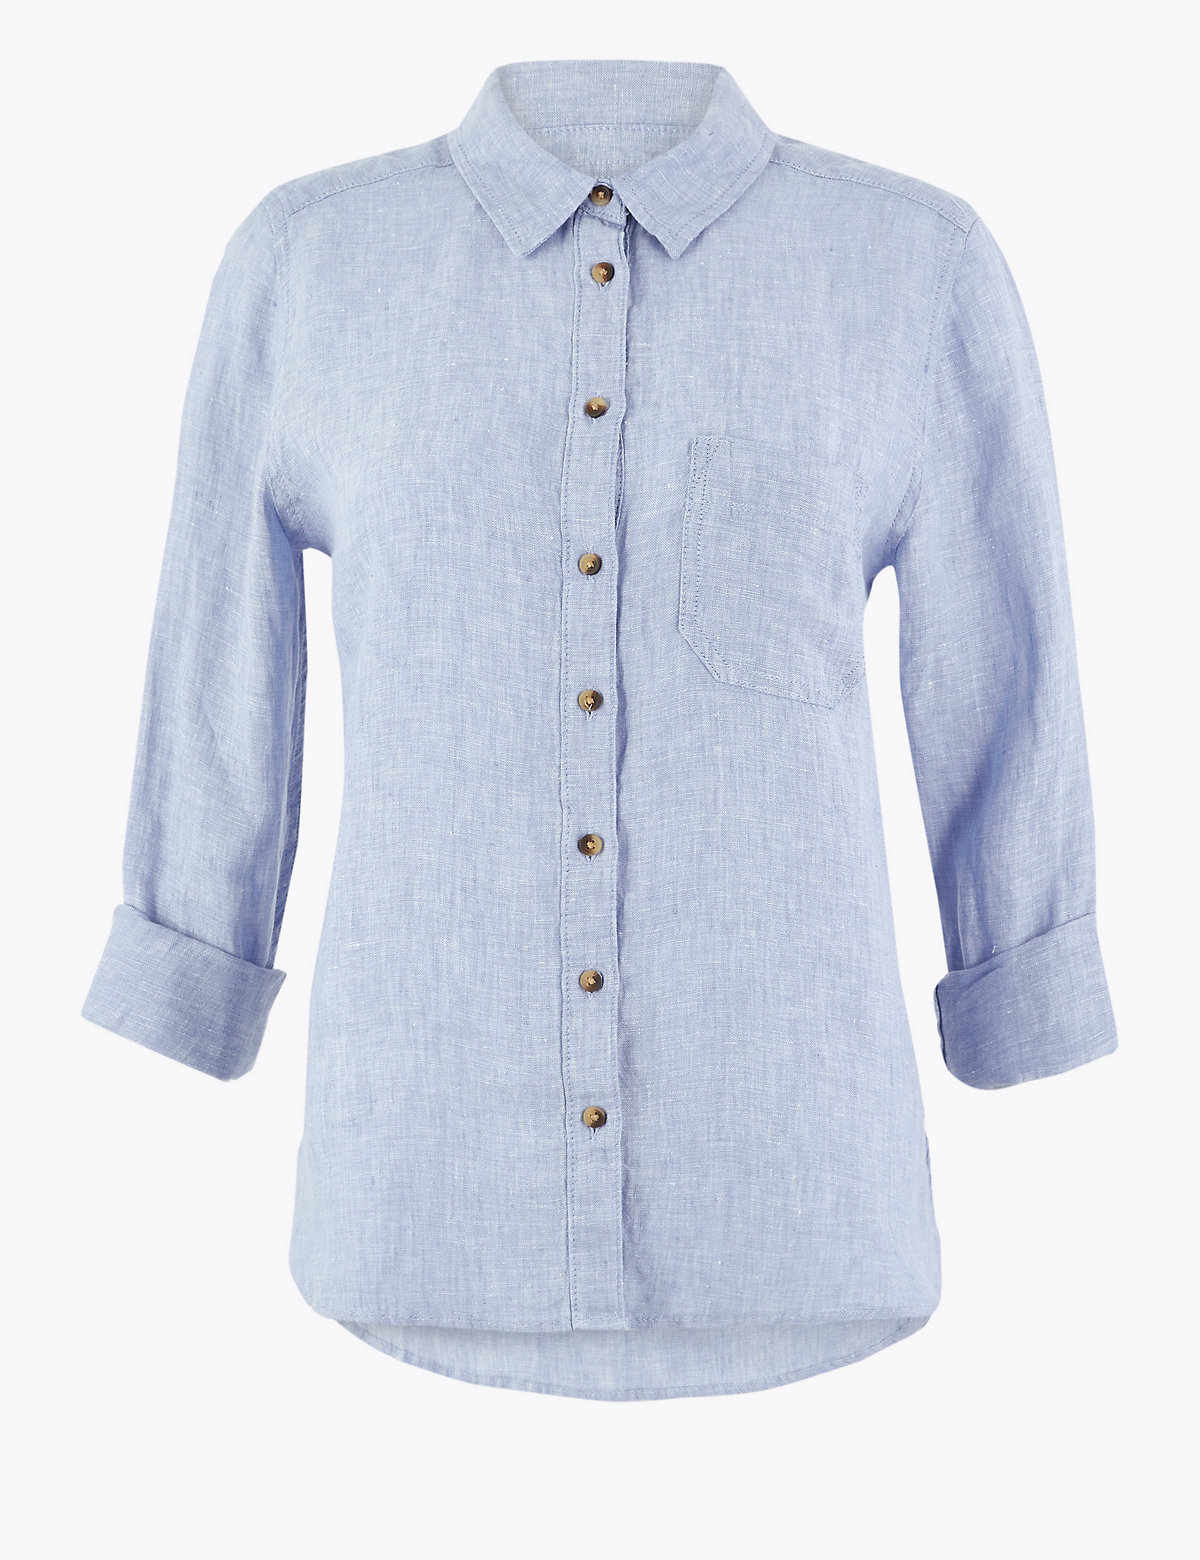 Pure Linen Button Detail Long Sleeve Shirt